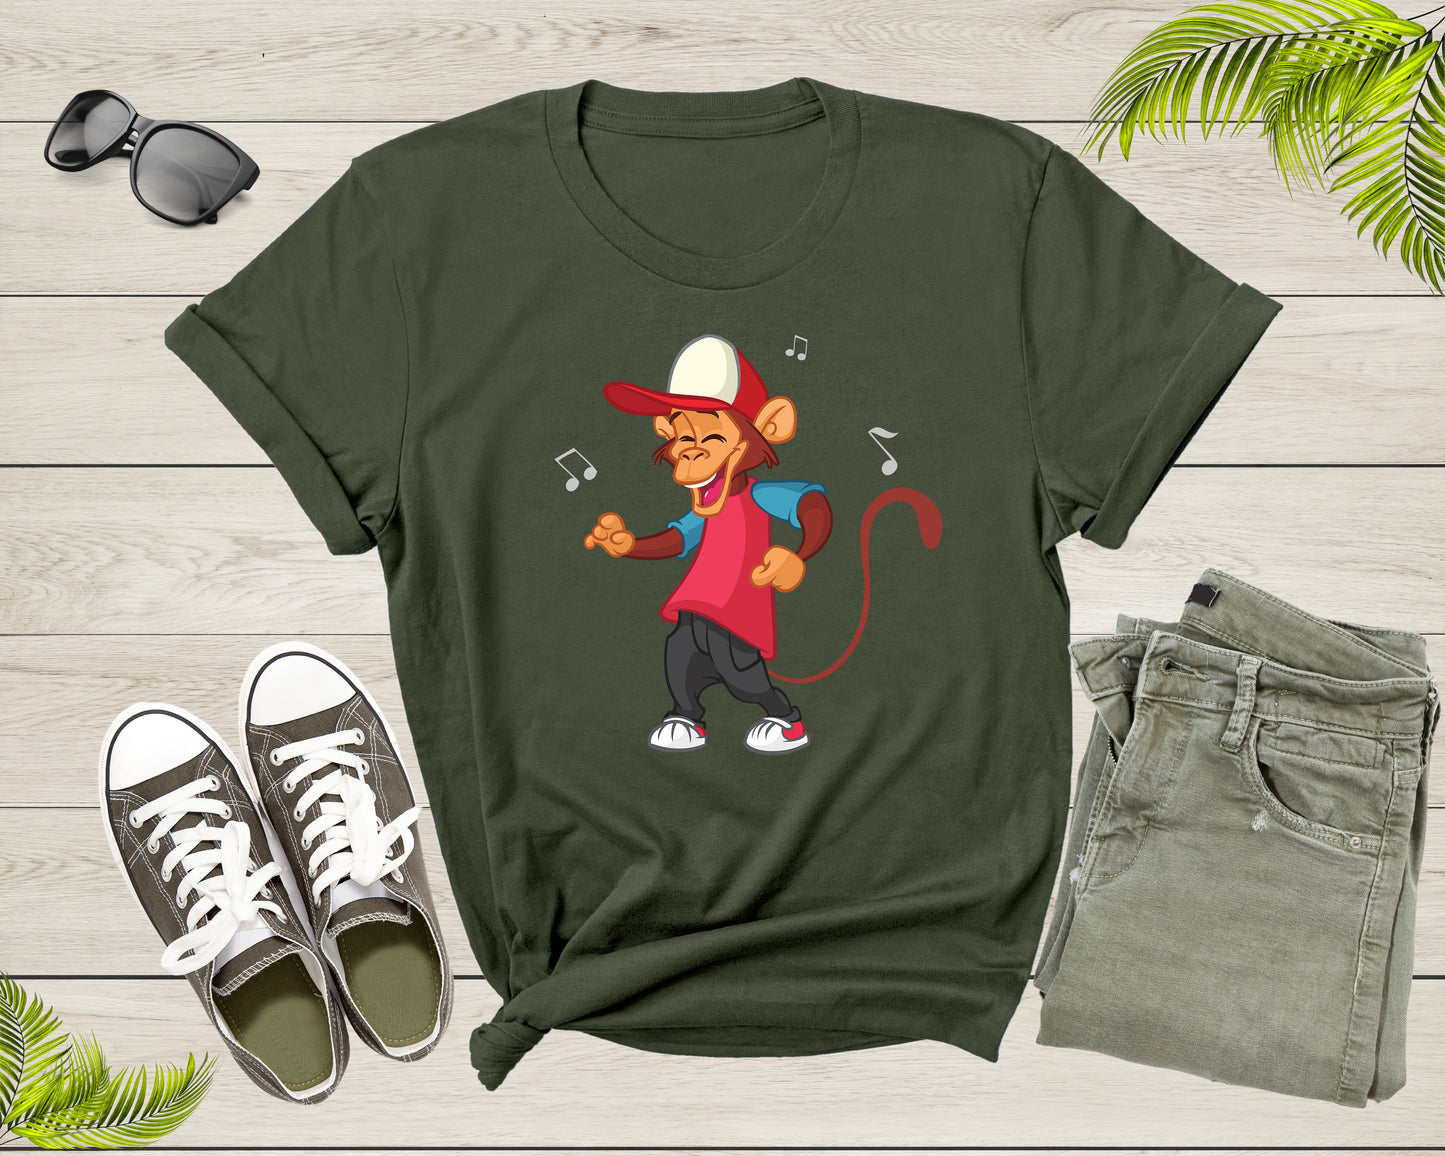 Funny Dancing Monkey Ape Music Note for Men Women Boys Girls T-Shirt Monkey Lover Gift T Shirt for Men Women Kids Boys Girls Graphic Tshirt